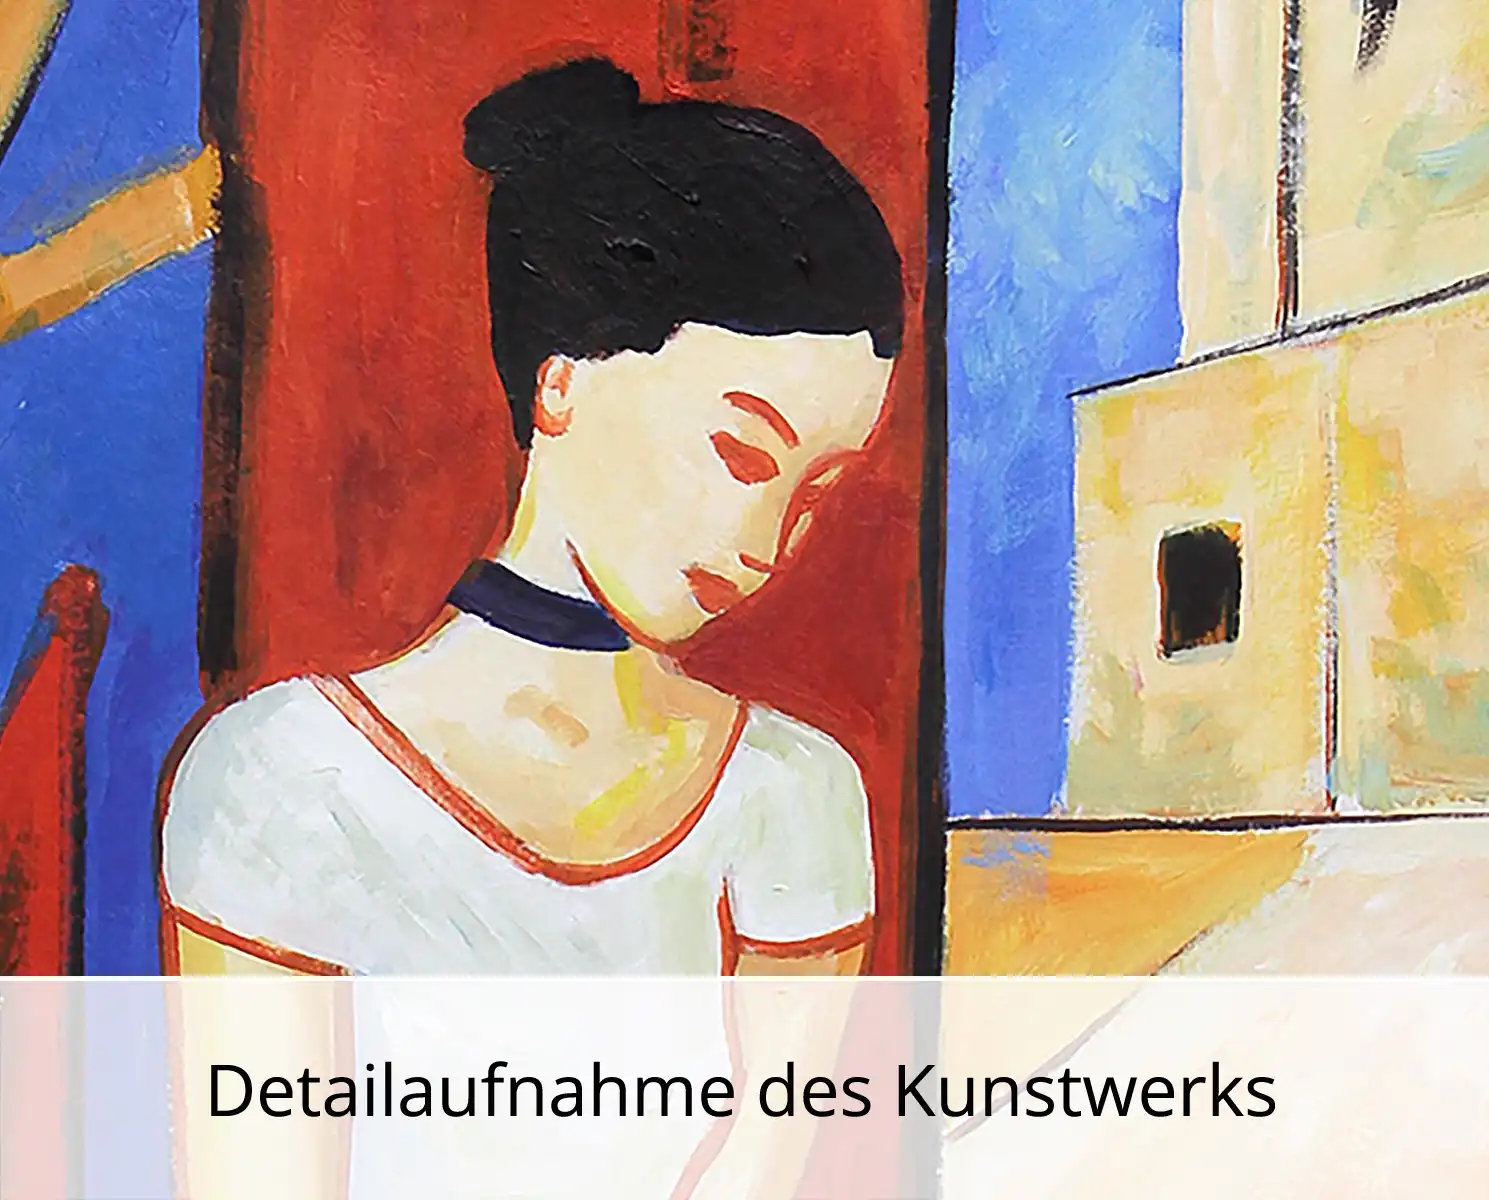 Kunstdruck, signiert, M. Cieśla: "Mädchen im Studio 19", Edition, 1/100